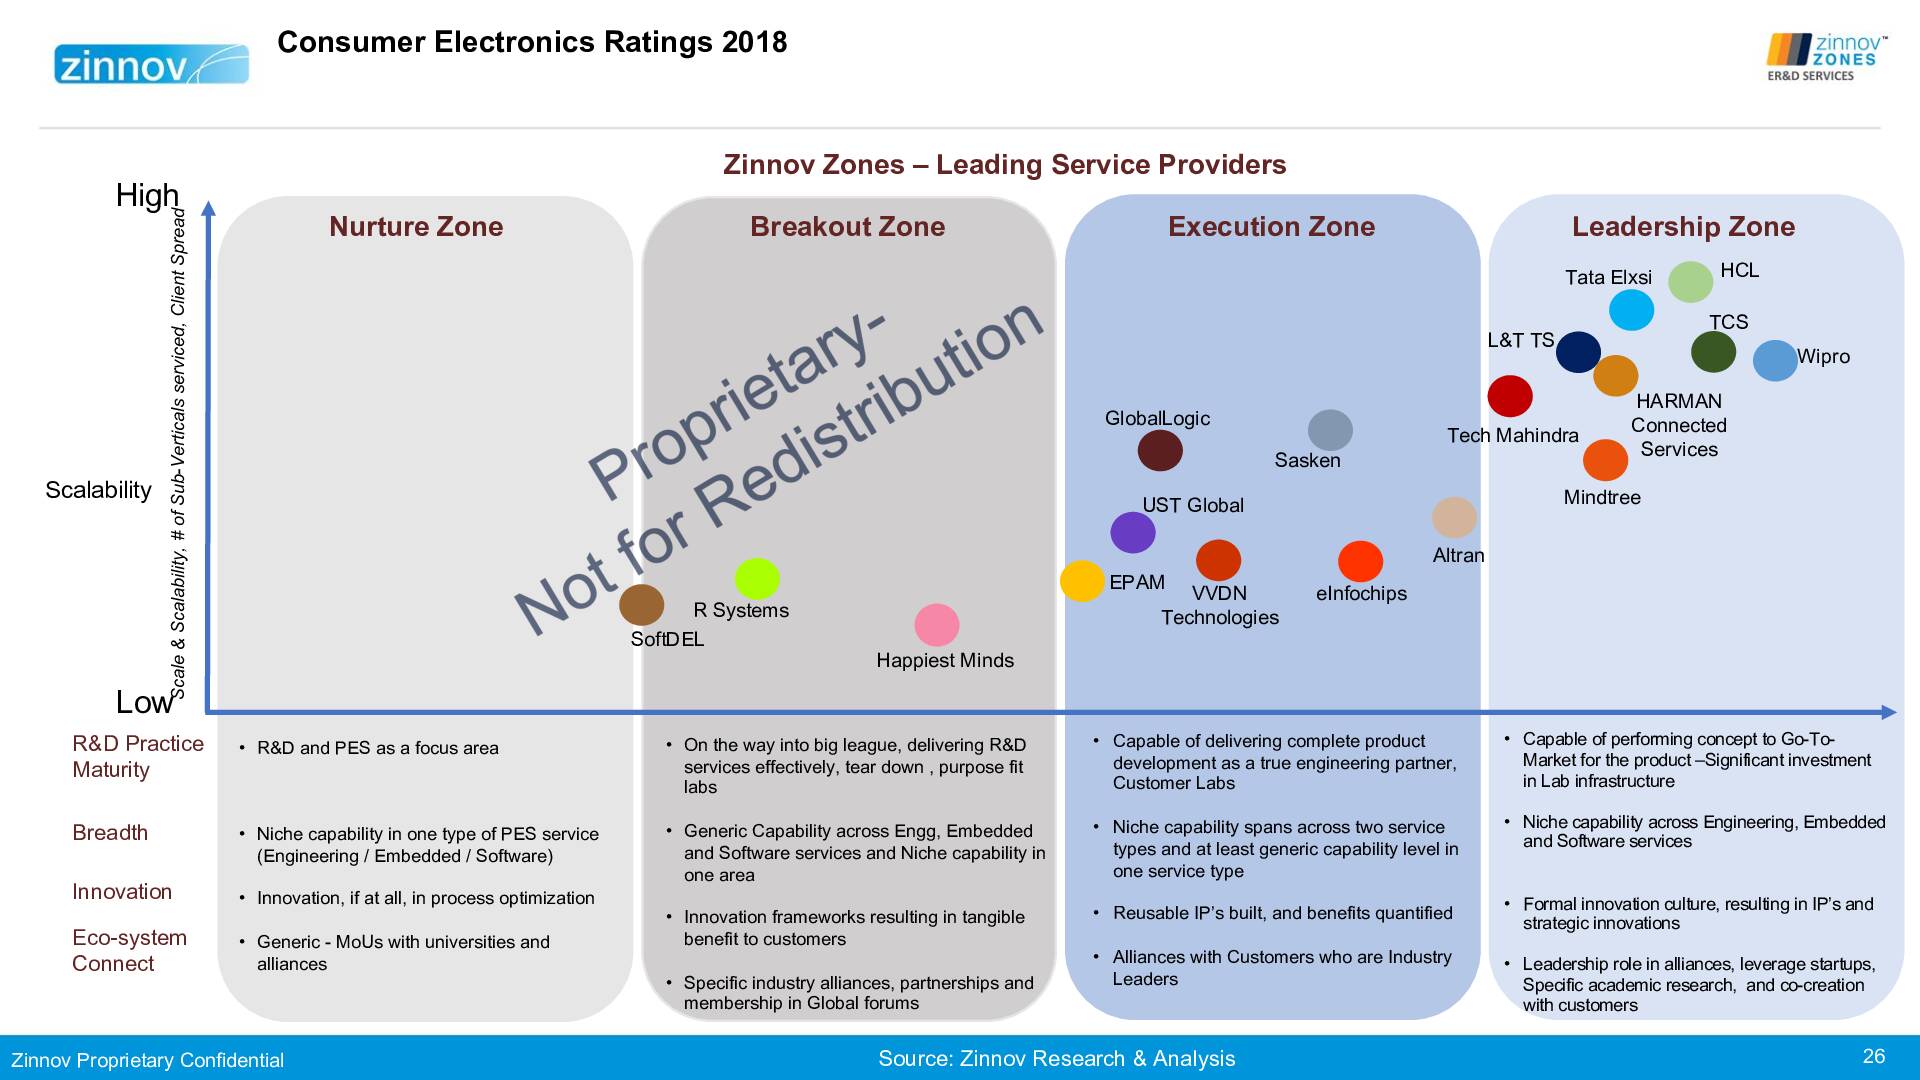 Zinnovzones Erd Ratings Report 201826